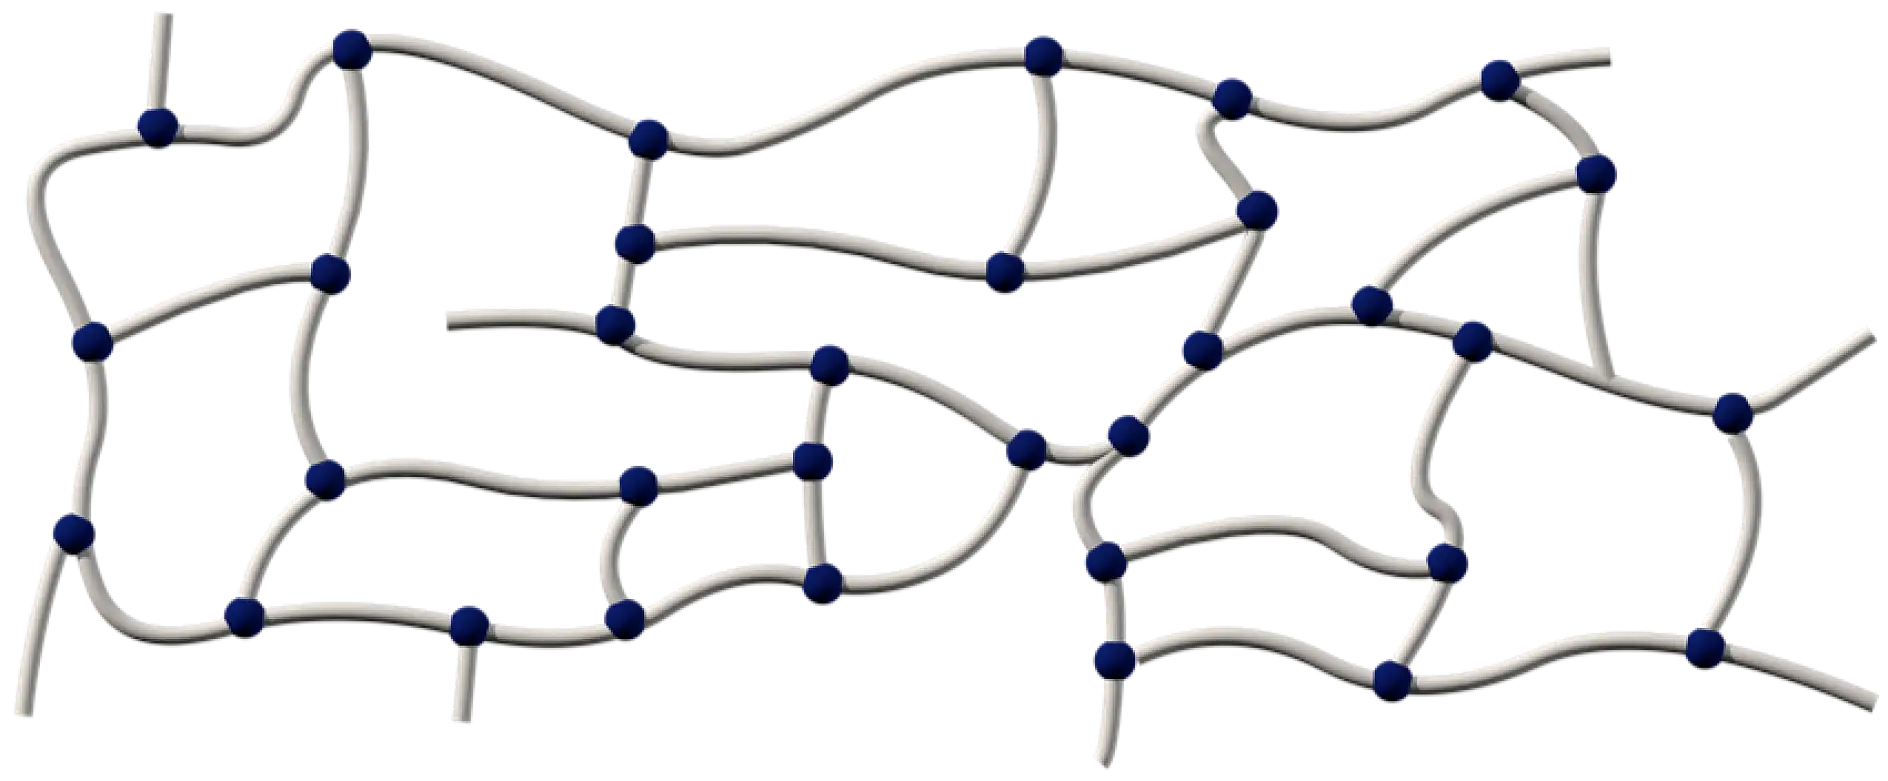 Adezivii acrilici constau în catene polimerice lungi cu legături încrucişate prin diverse metode: chimic, prin radiaţie UV sau prin rigidizare cu fascicul de electroni